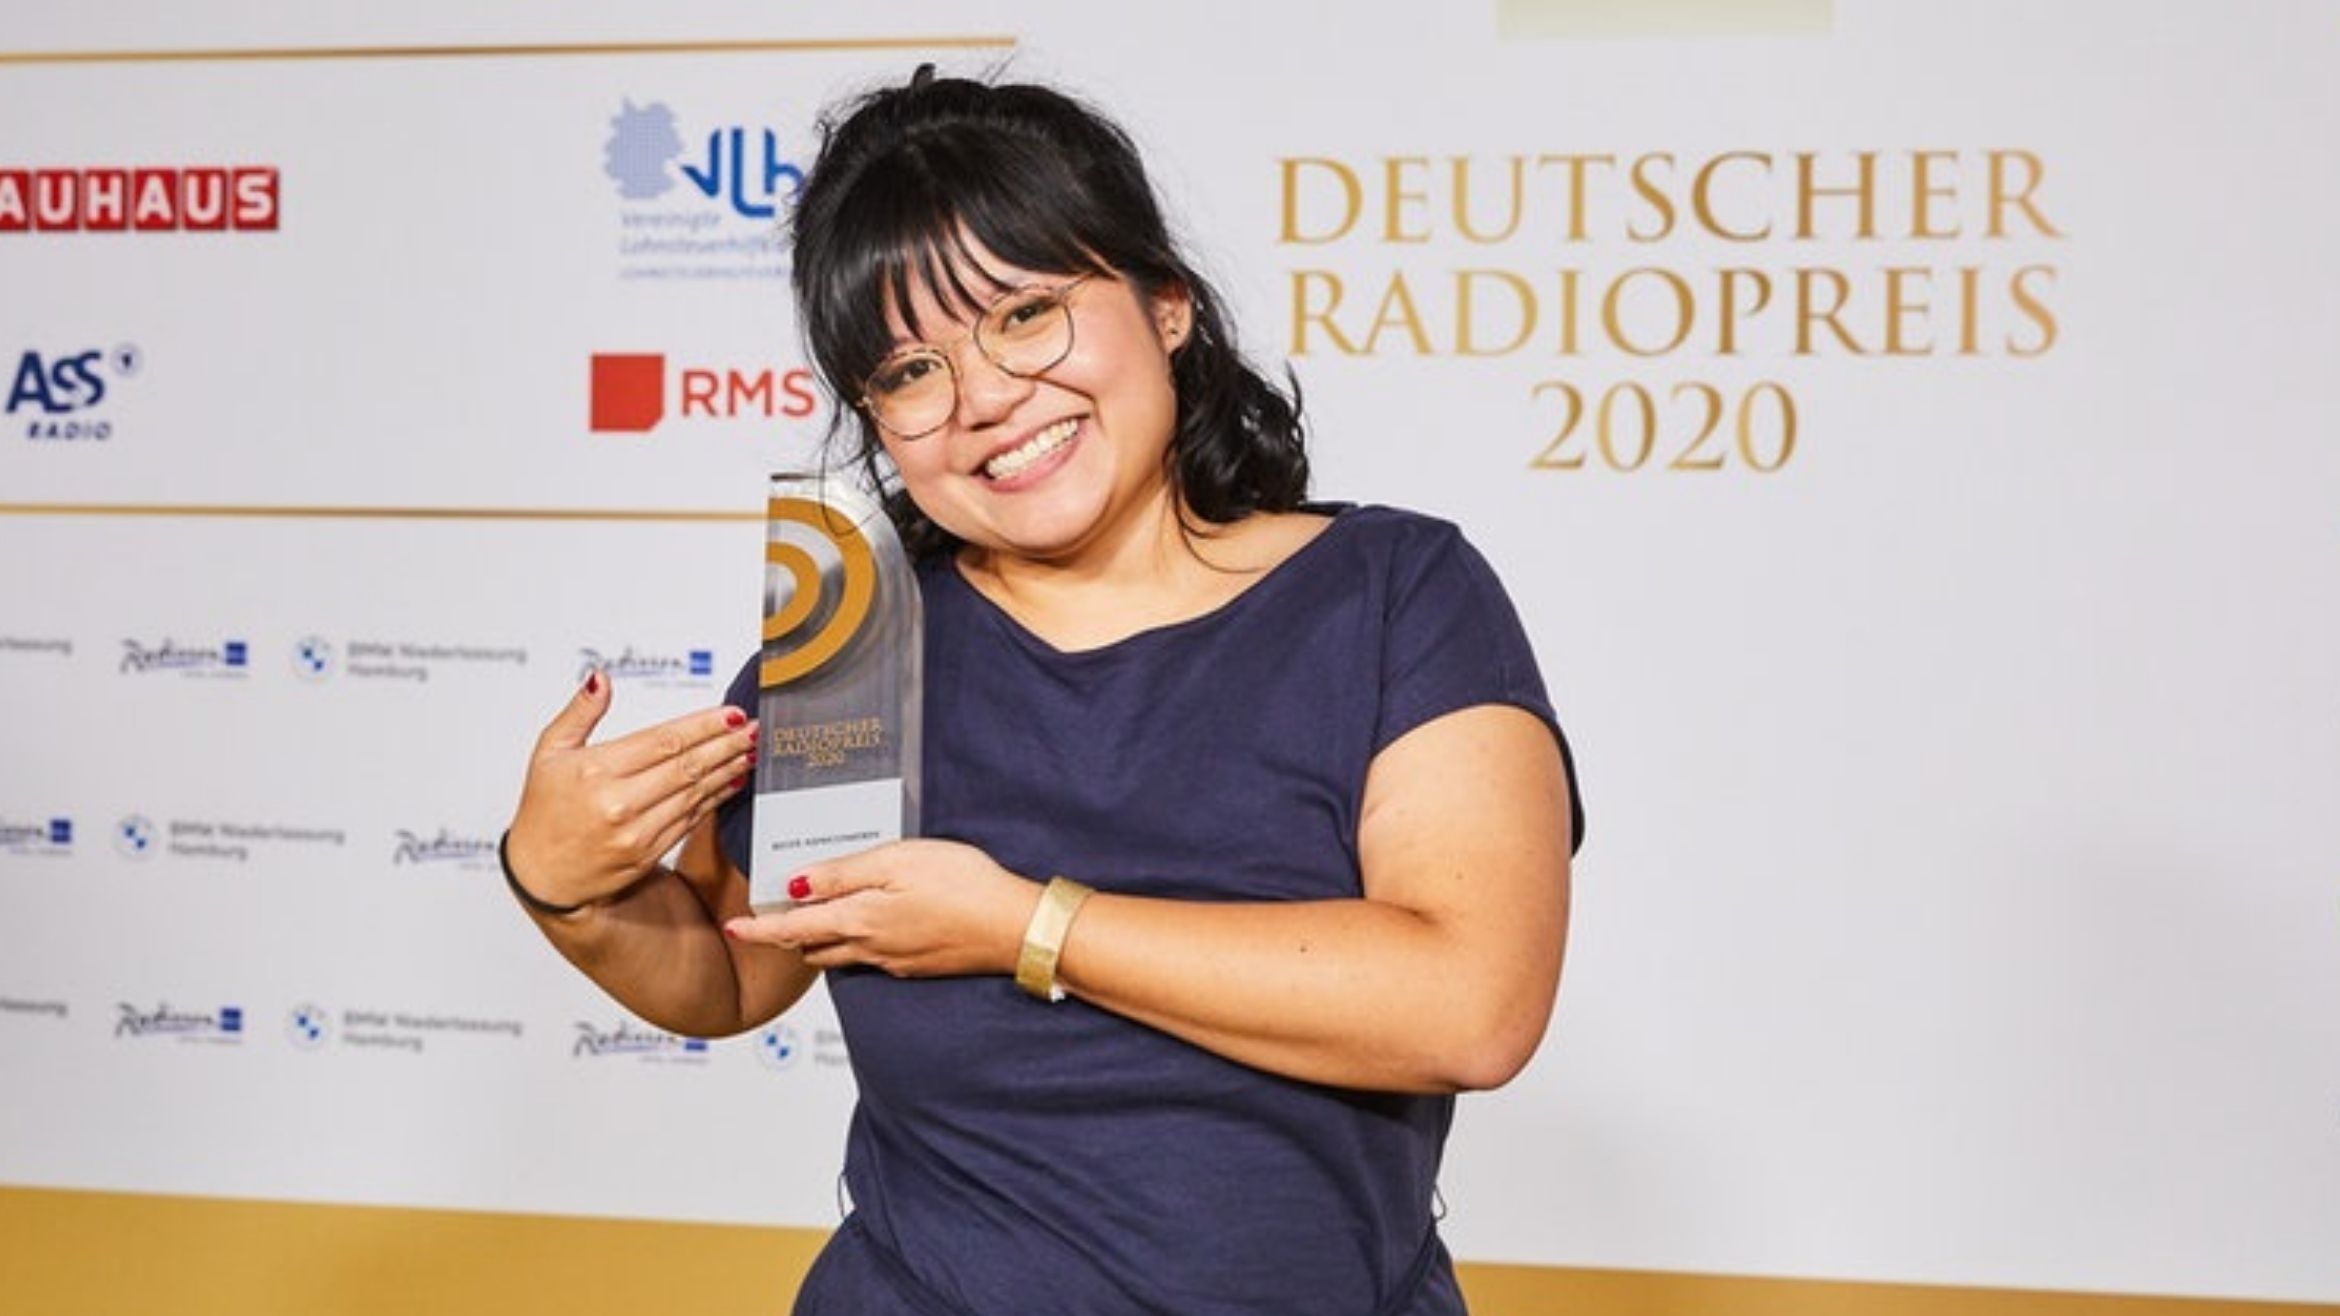 Anh Tran vom Deutschlandfunk wurde beim Deutschen Radiopreis 2020 als beste Newcomerin ausgezeichnet, 